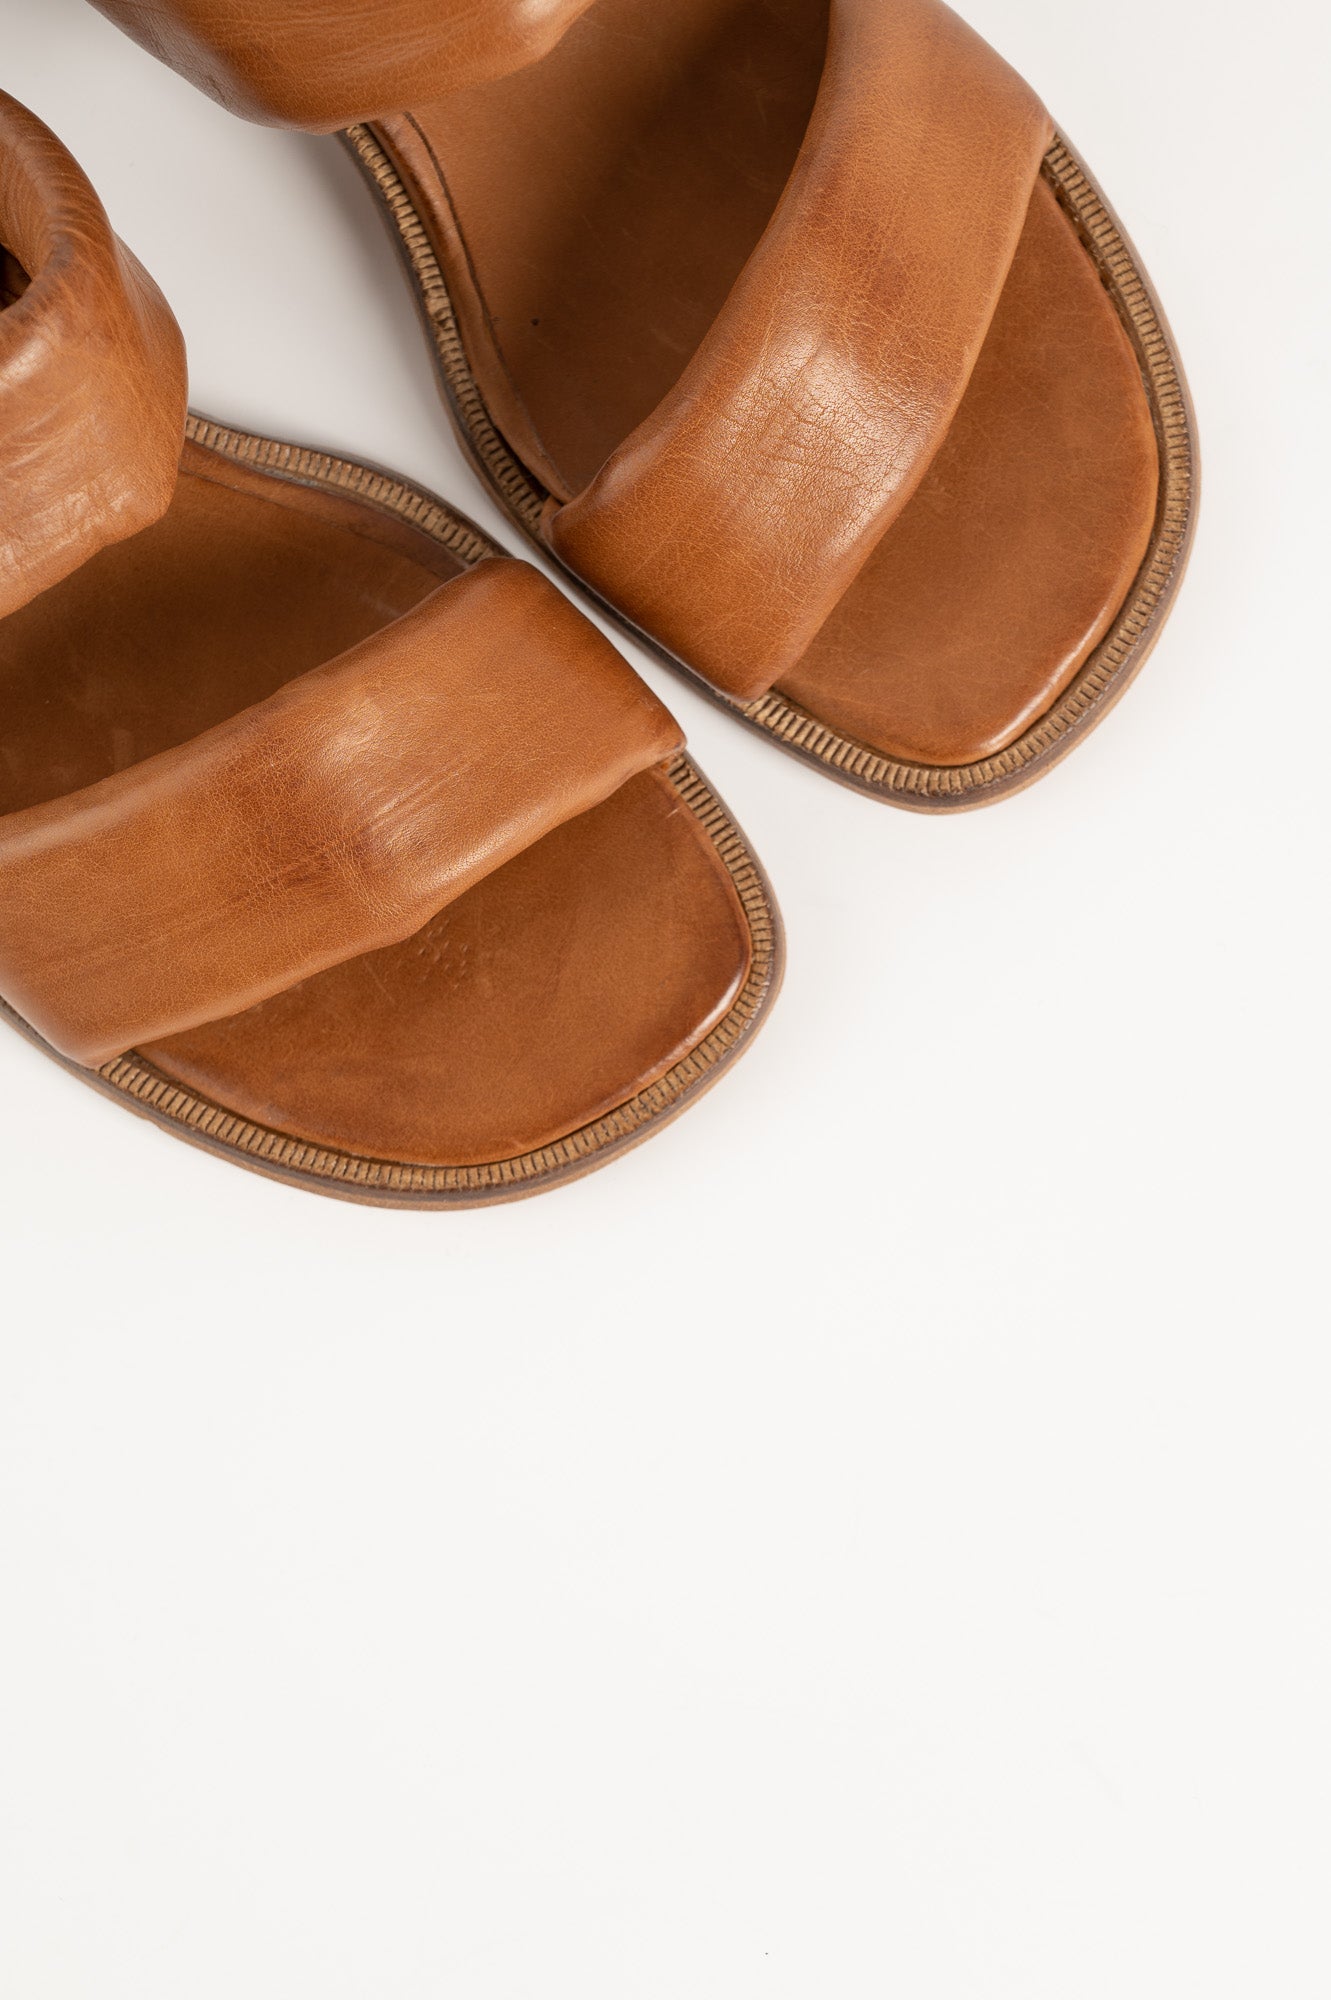 Sandal 124 | Cognac Leather